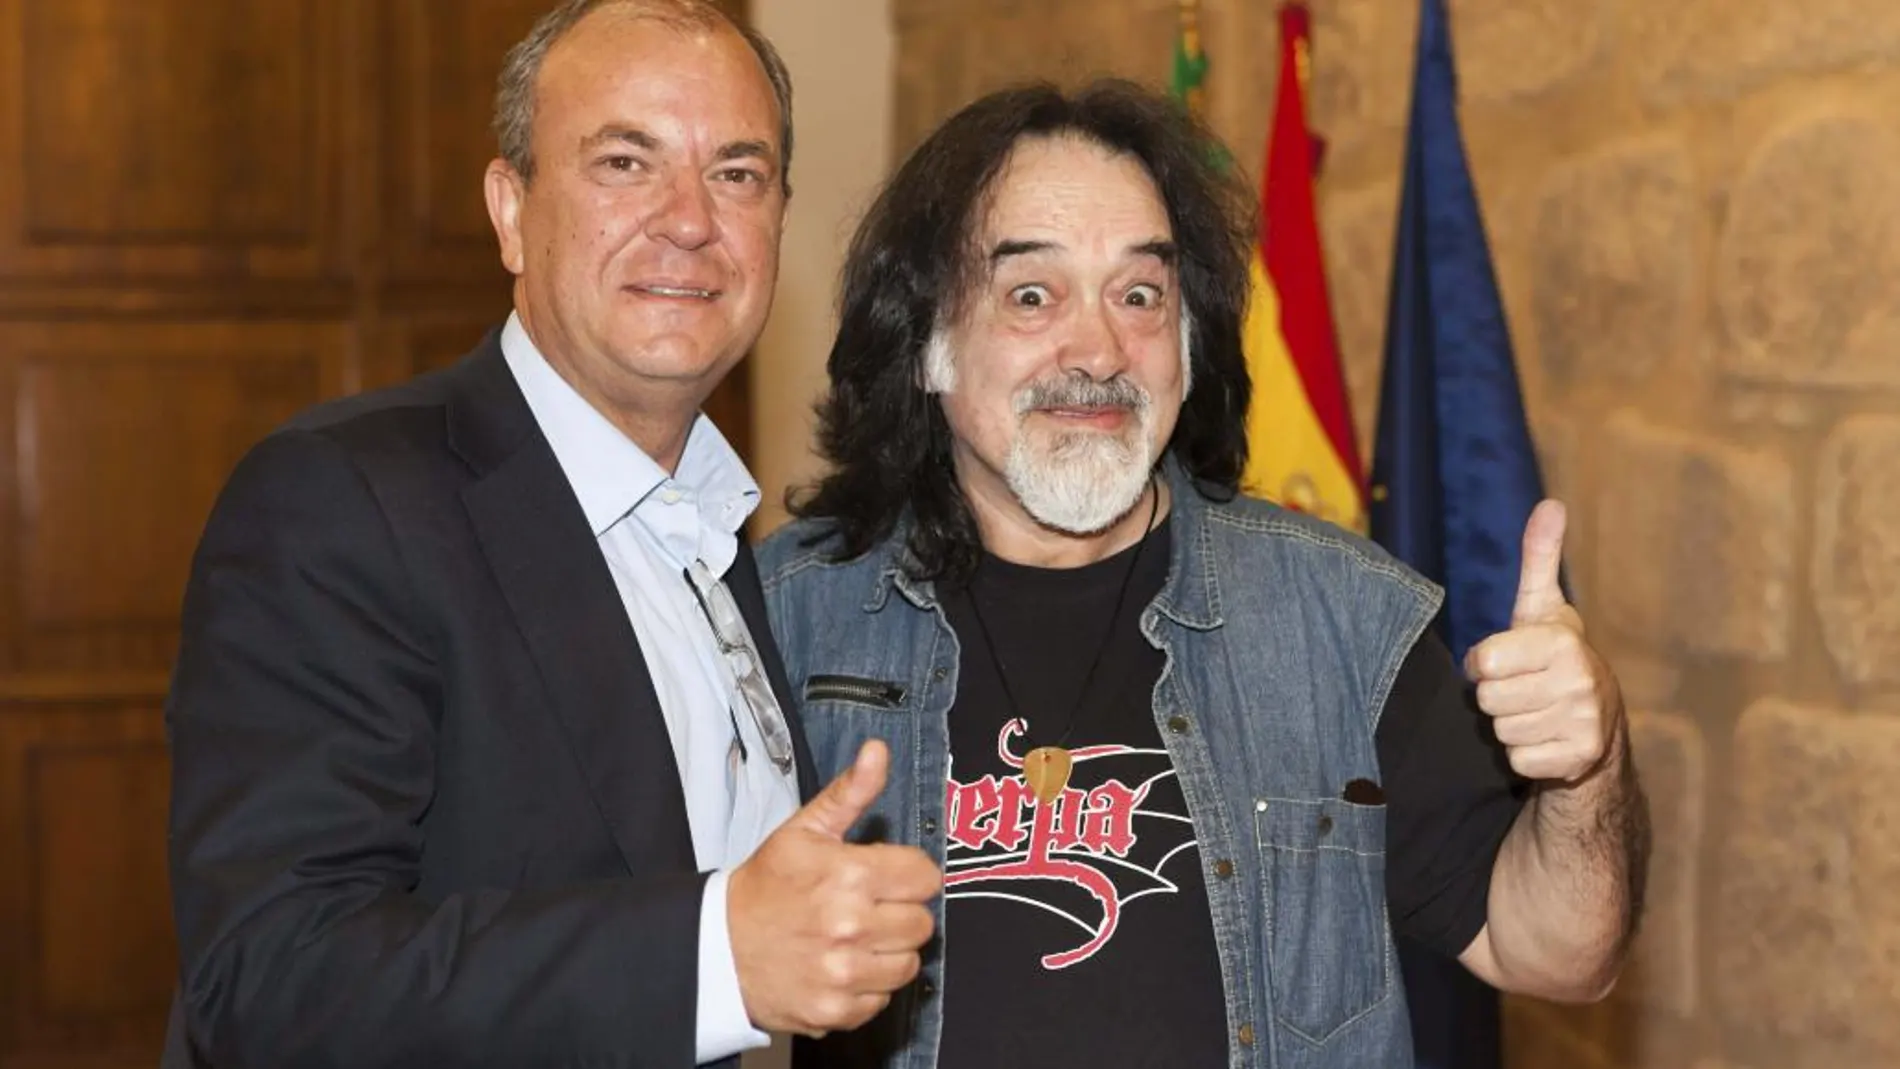 El presidente del Gobierno de Extremadura, José Antonio Monago (i), posa junto a José Luis Campuzano, 'Sherpa' (d), fundador del grupo de rock Barón Rojo